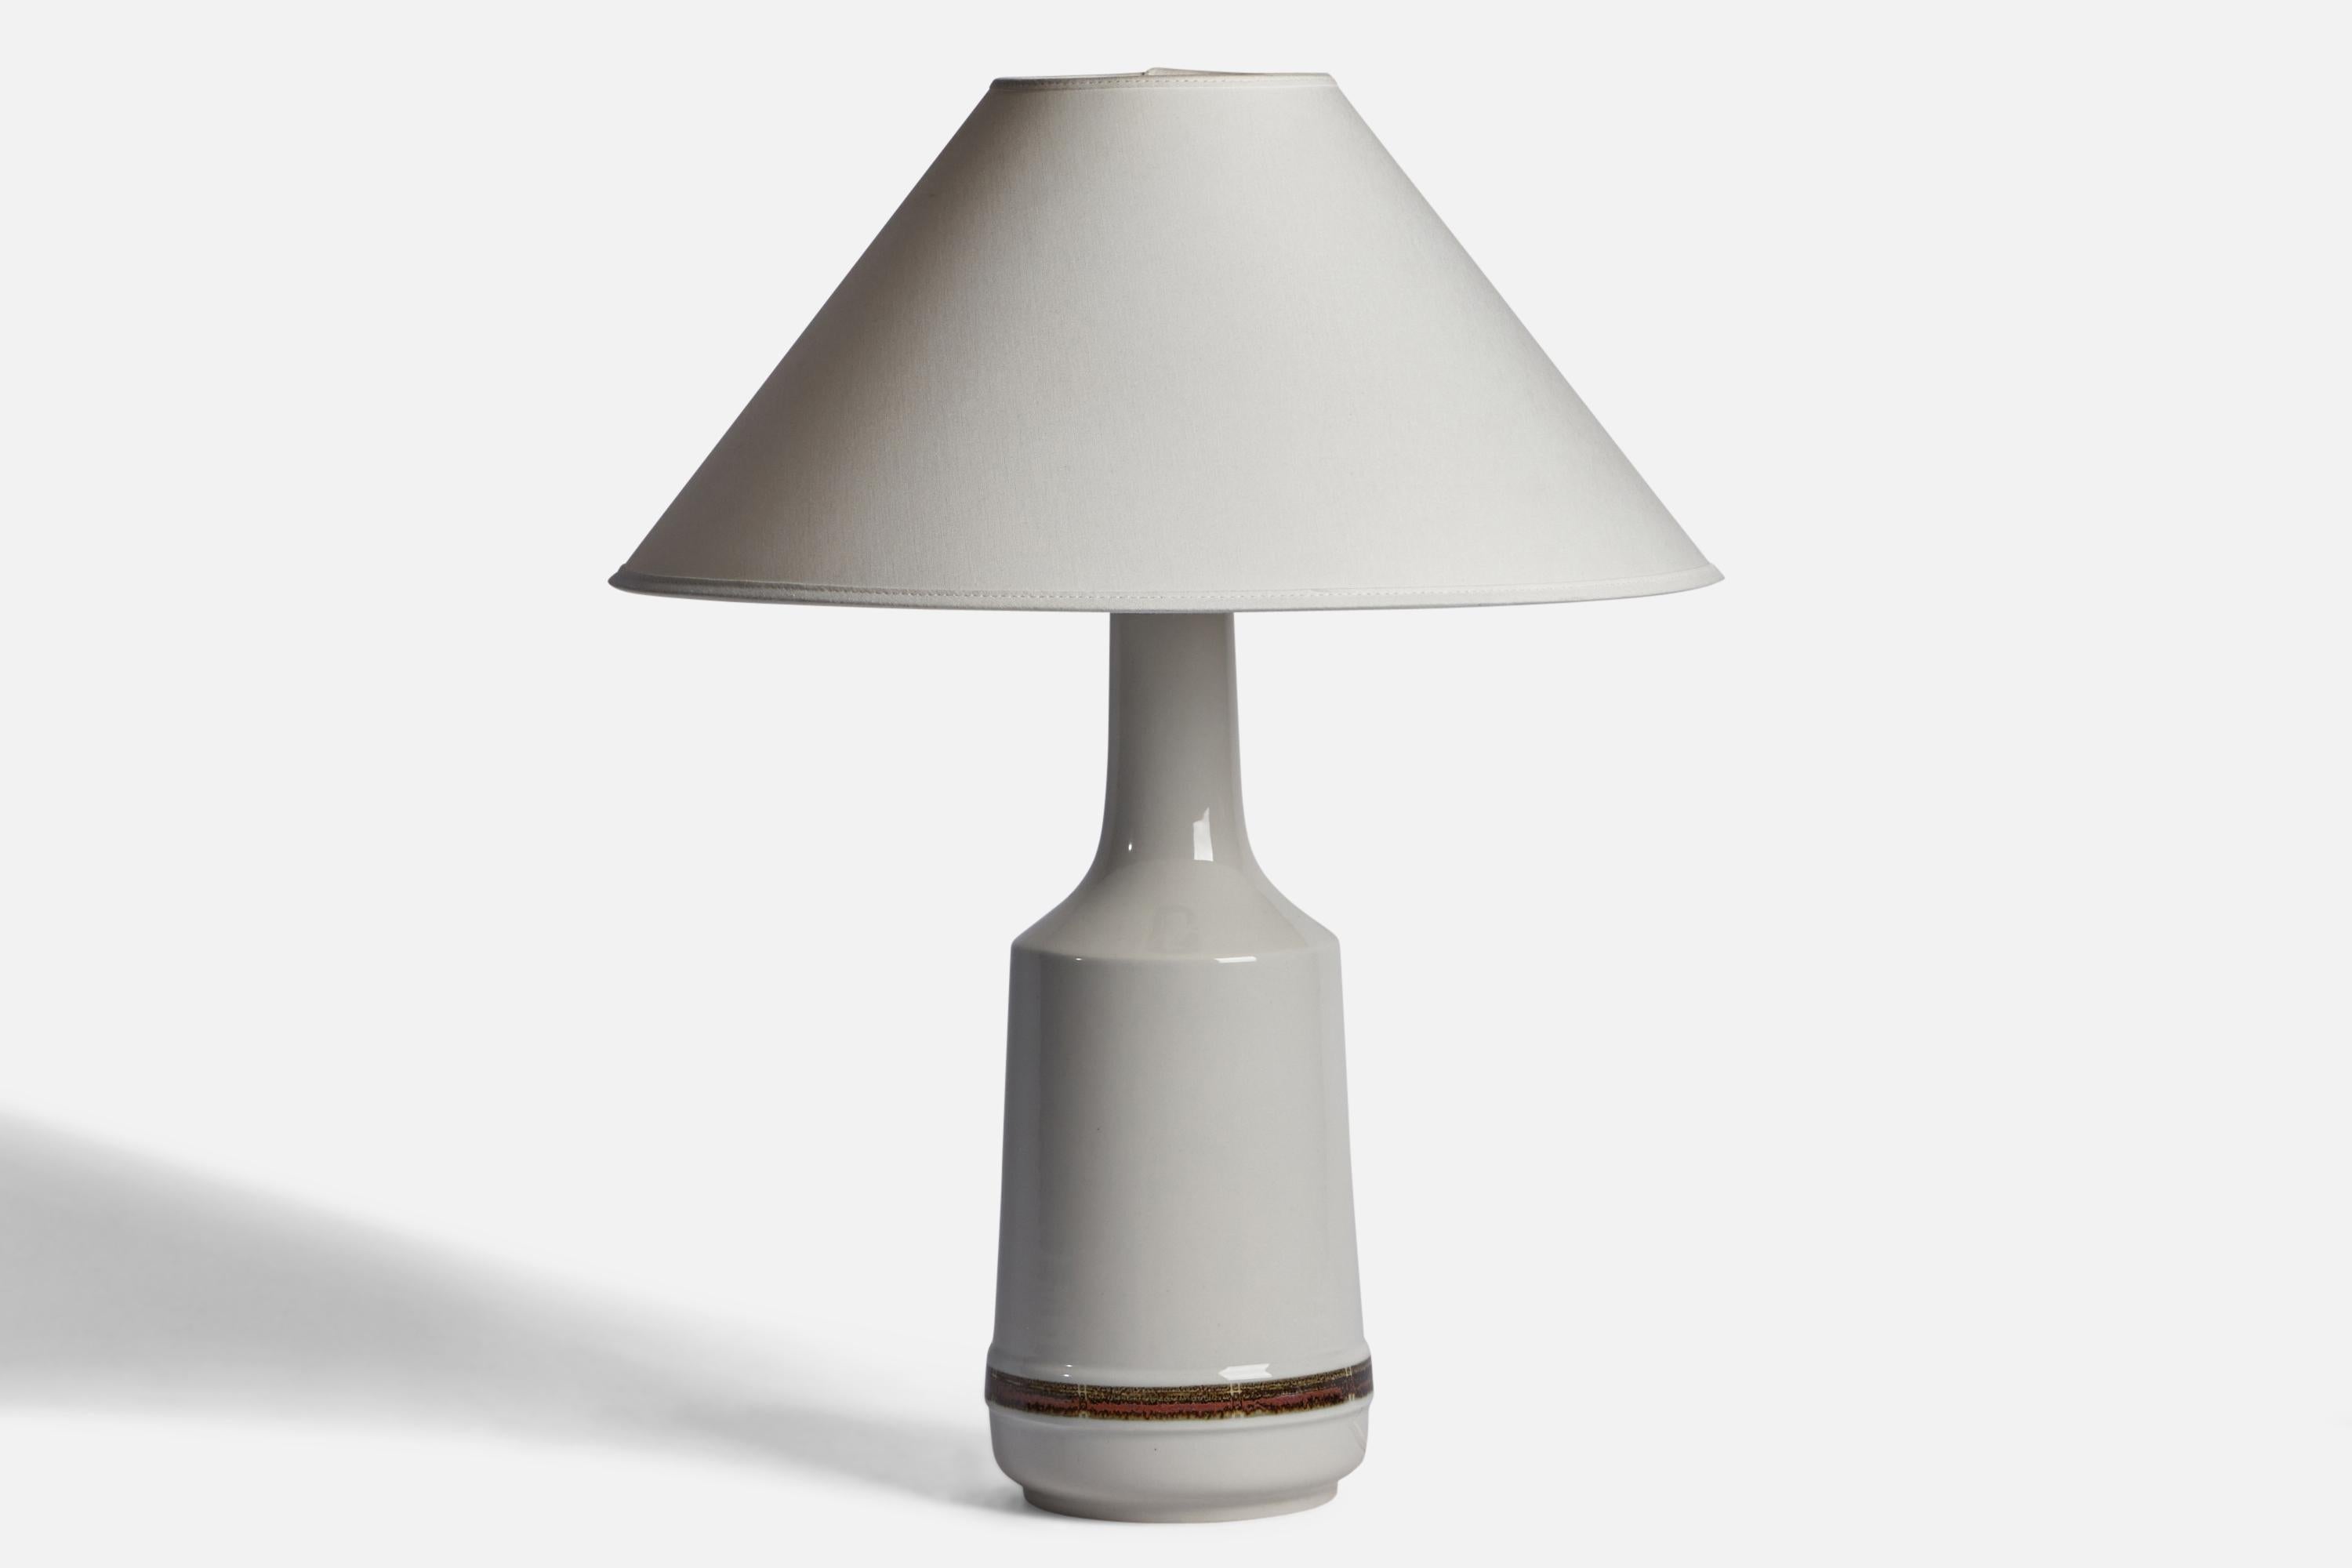 Tischleuchte aus weiß glasiertem Steingut, entworfen und hergestellt von Desiree, Dänemark, 1960er Jahre.

Abmessungen der Lampe (Zoll): 16,25